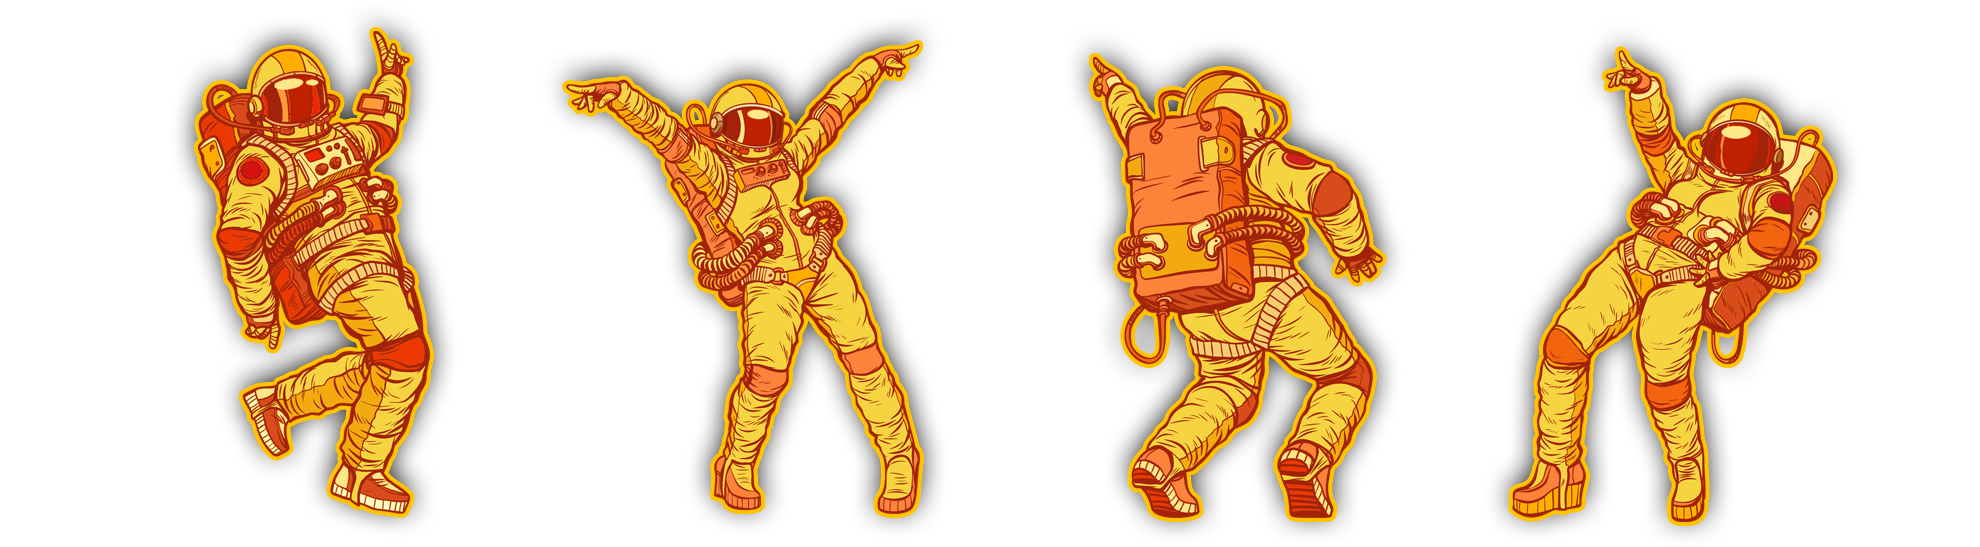 four dancing astronauts